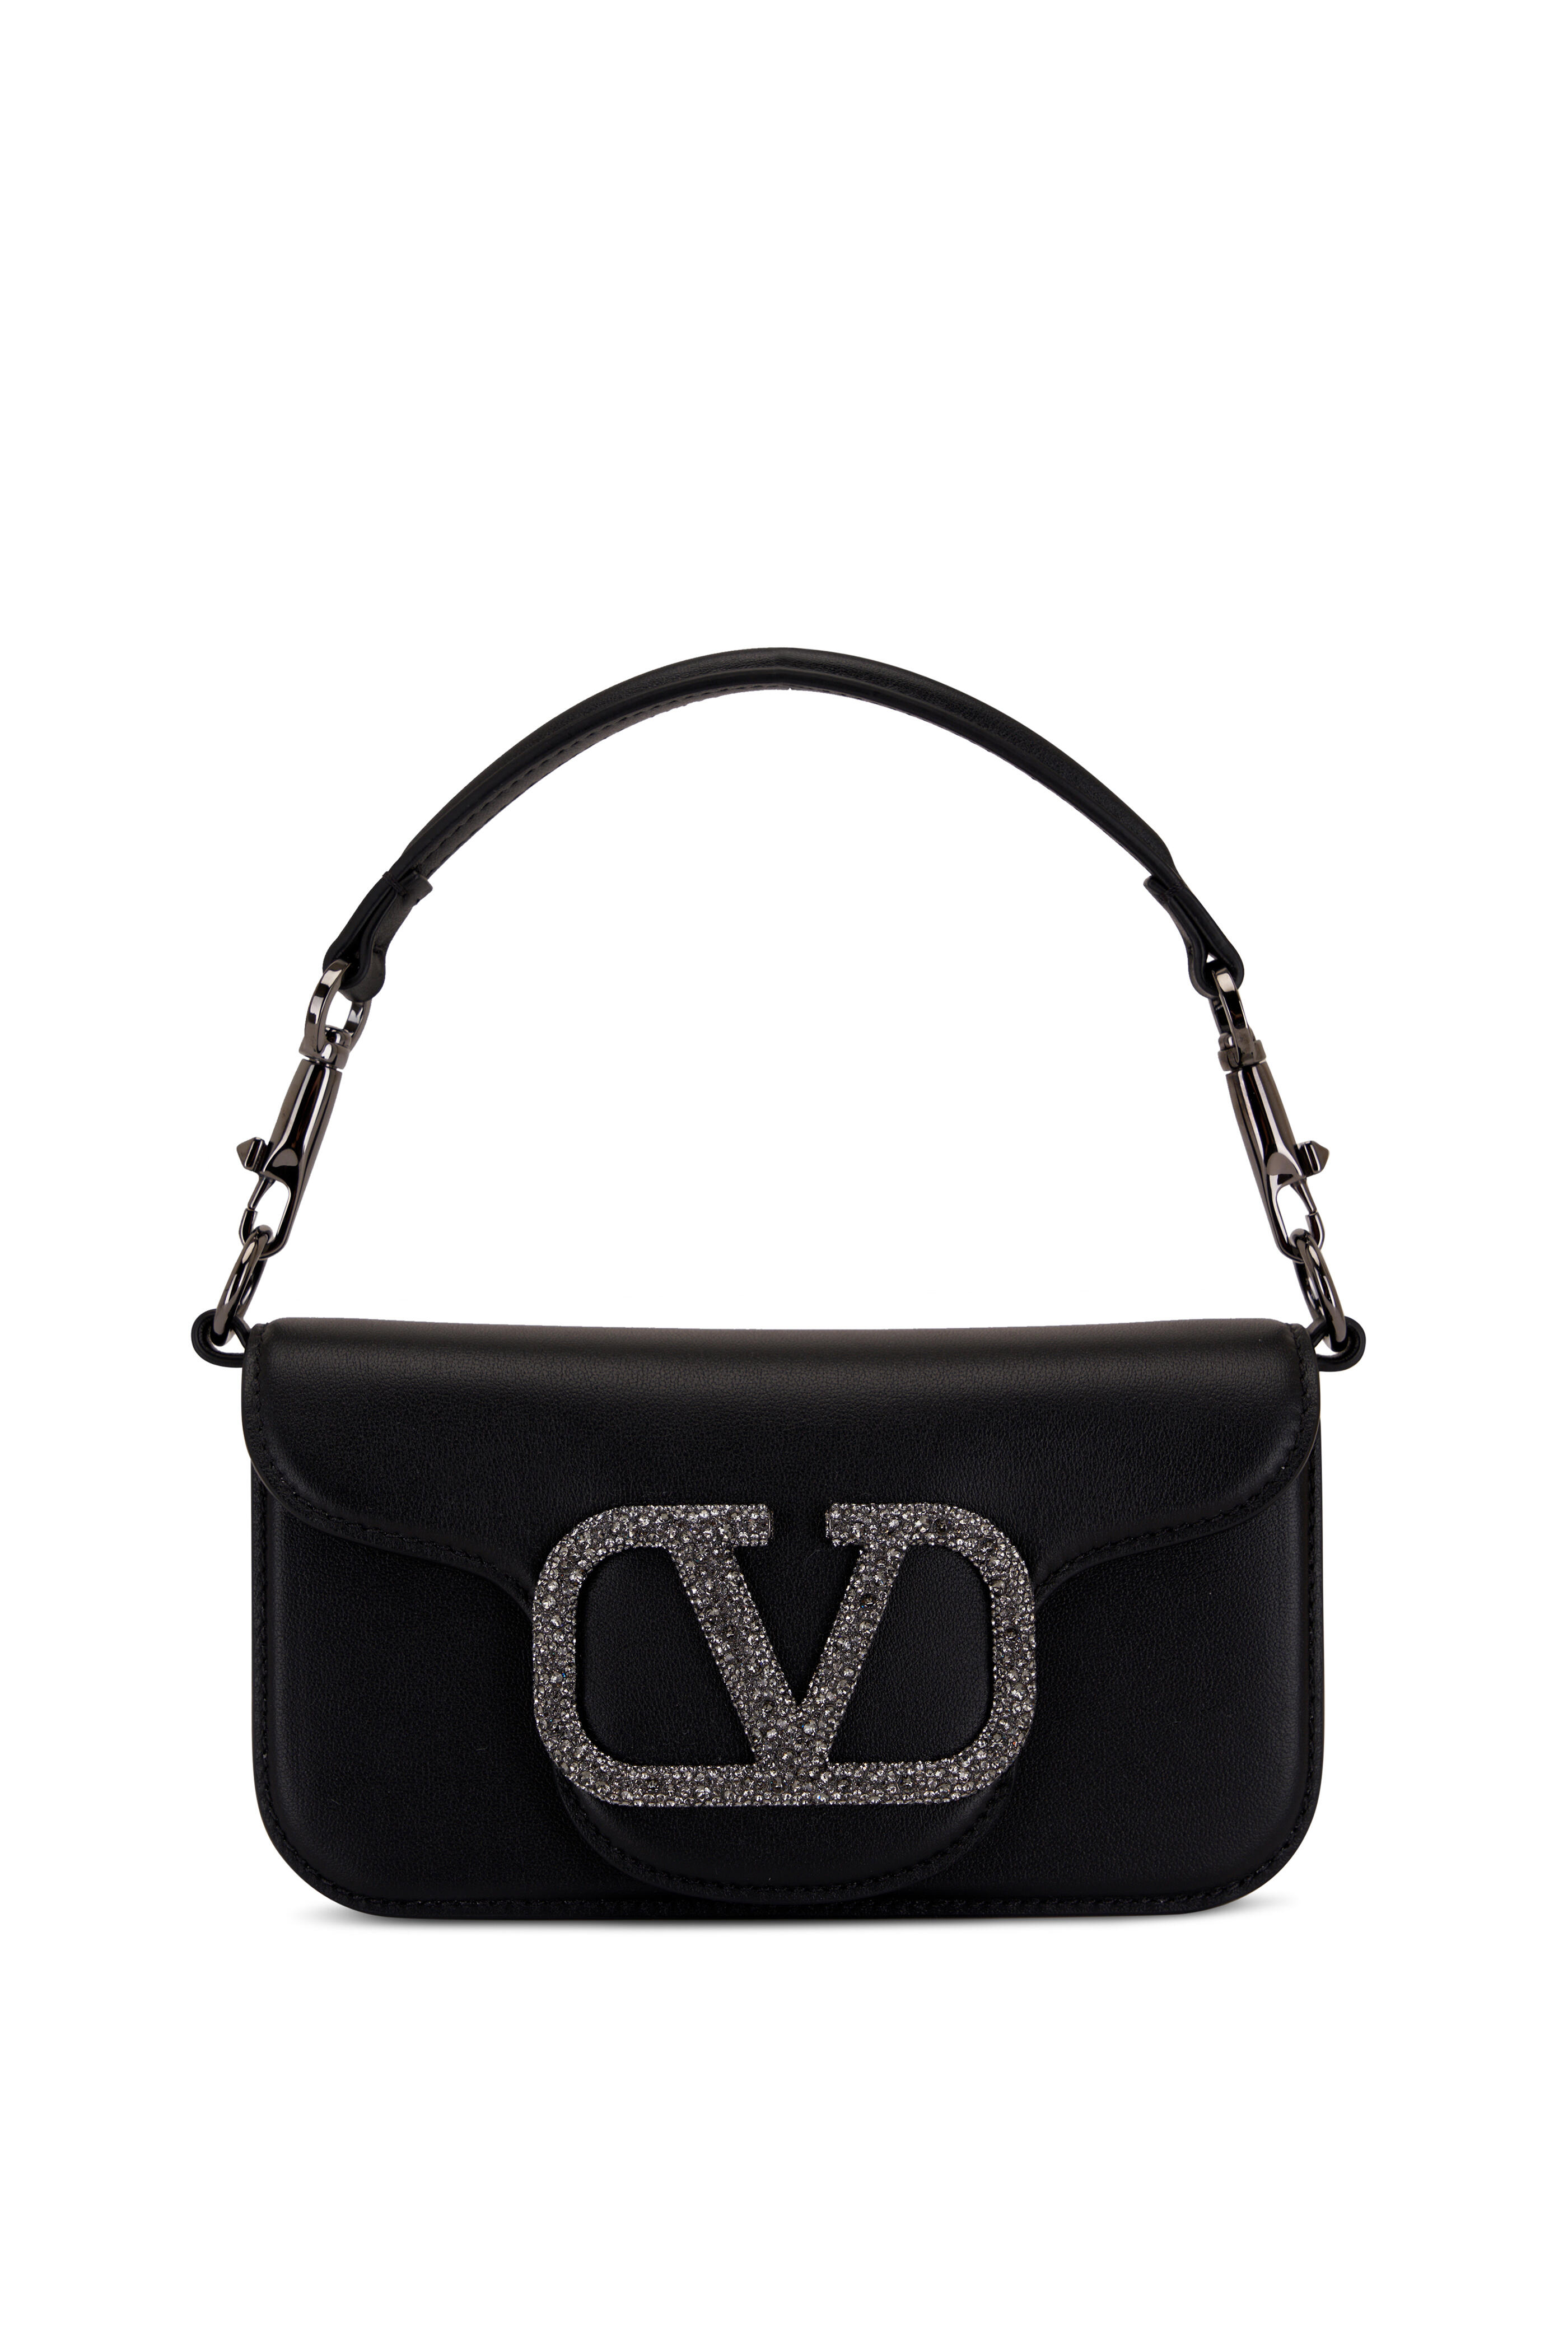 VALENTINO Vsling Small Black Leather Shoulder Bag.